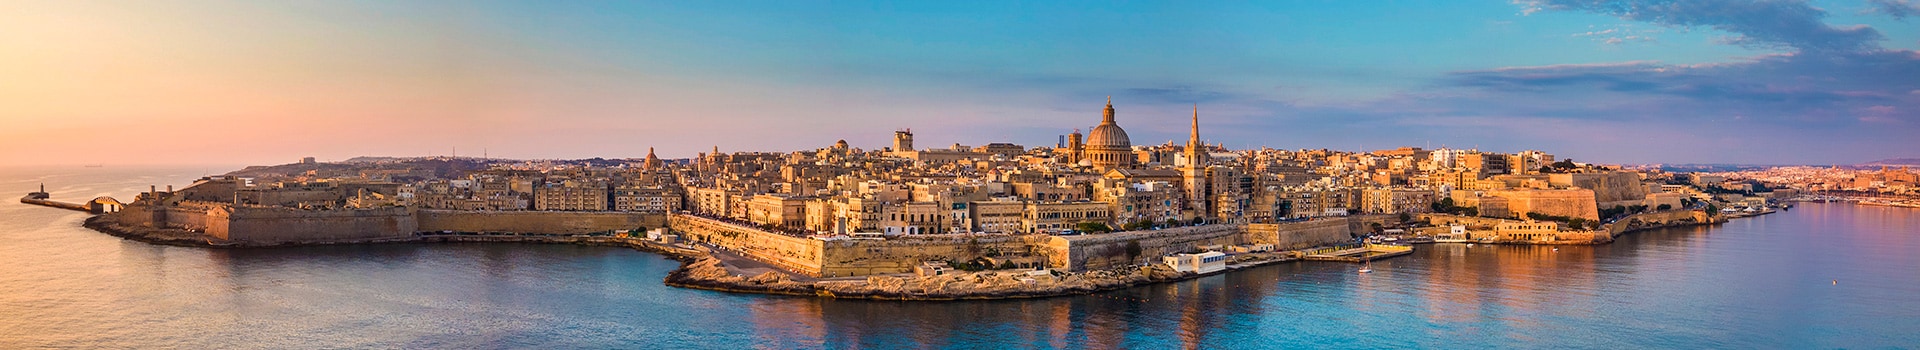 Naples - Malta